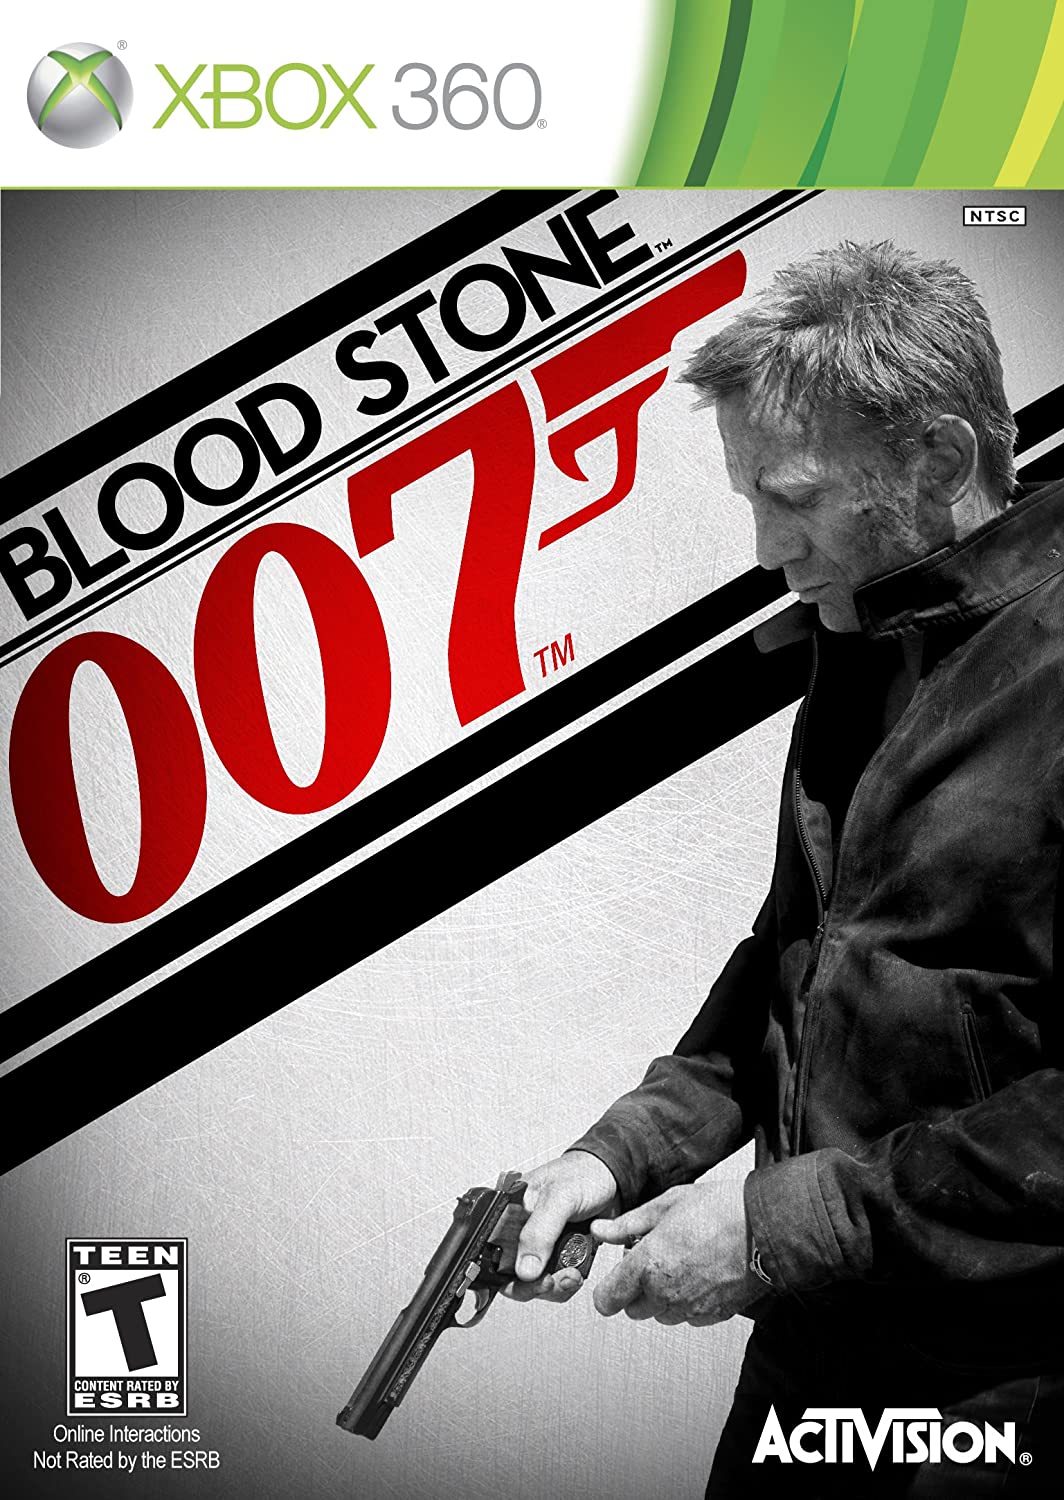 Blood stone 007(xbox 360) Activision - saynama